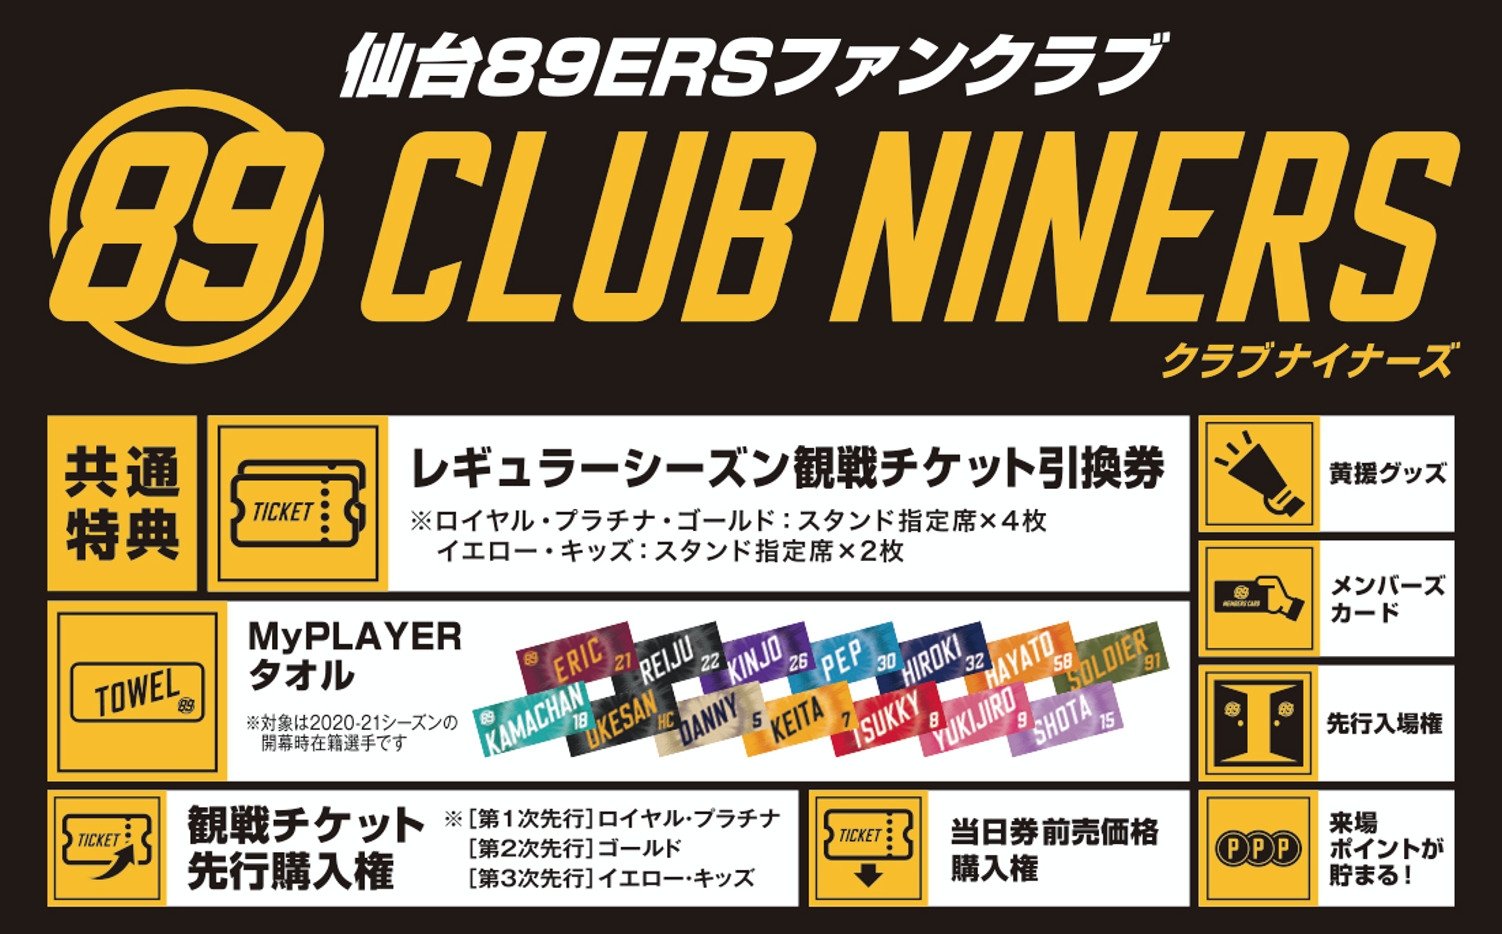 仙台89ERS】ファンクラブ「CLUB NINERS」メンバー入会受付中！ | 日刊 